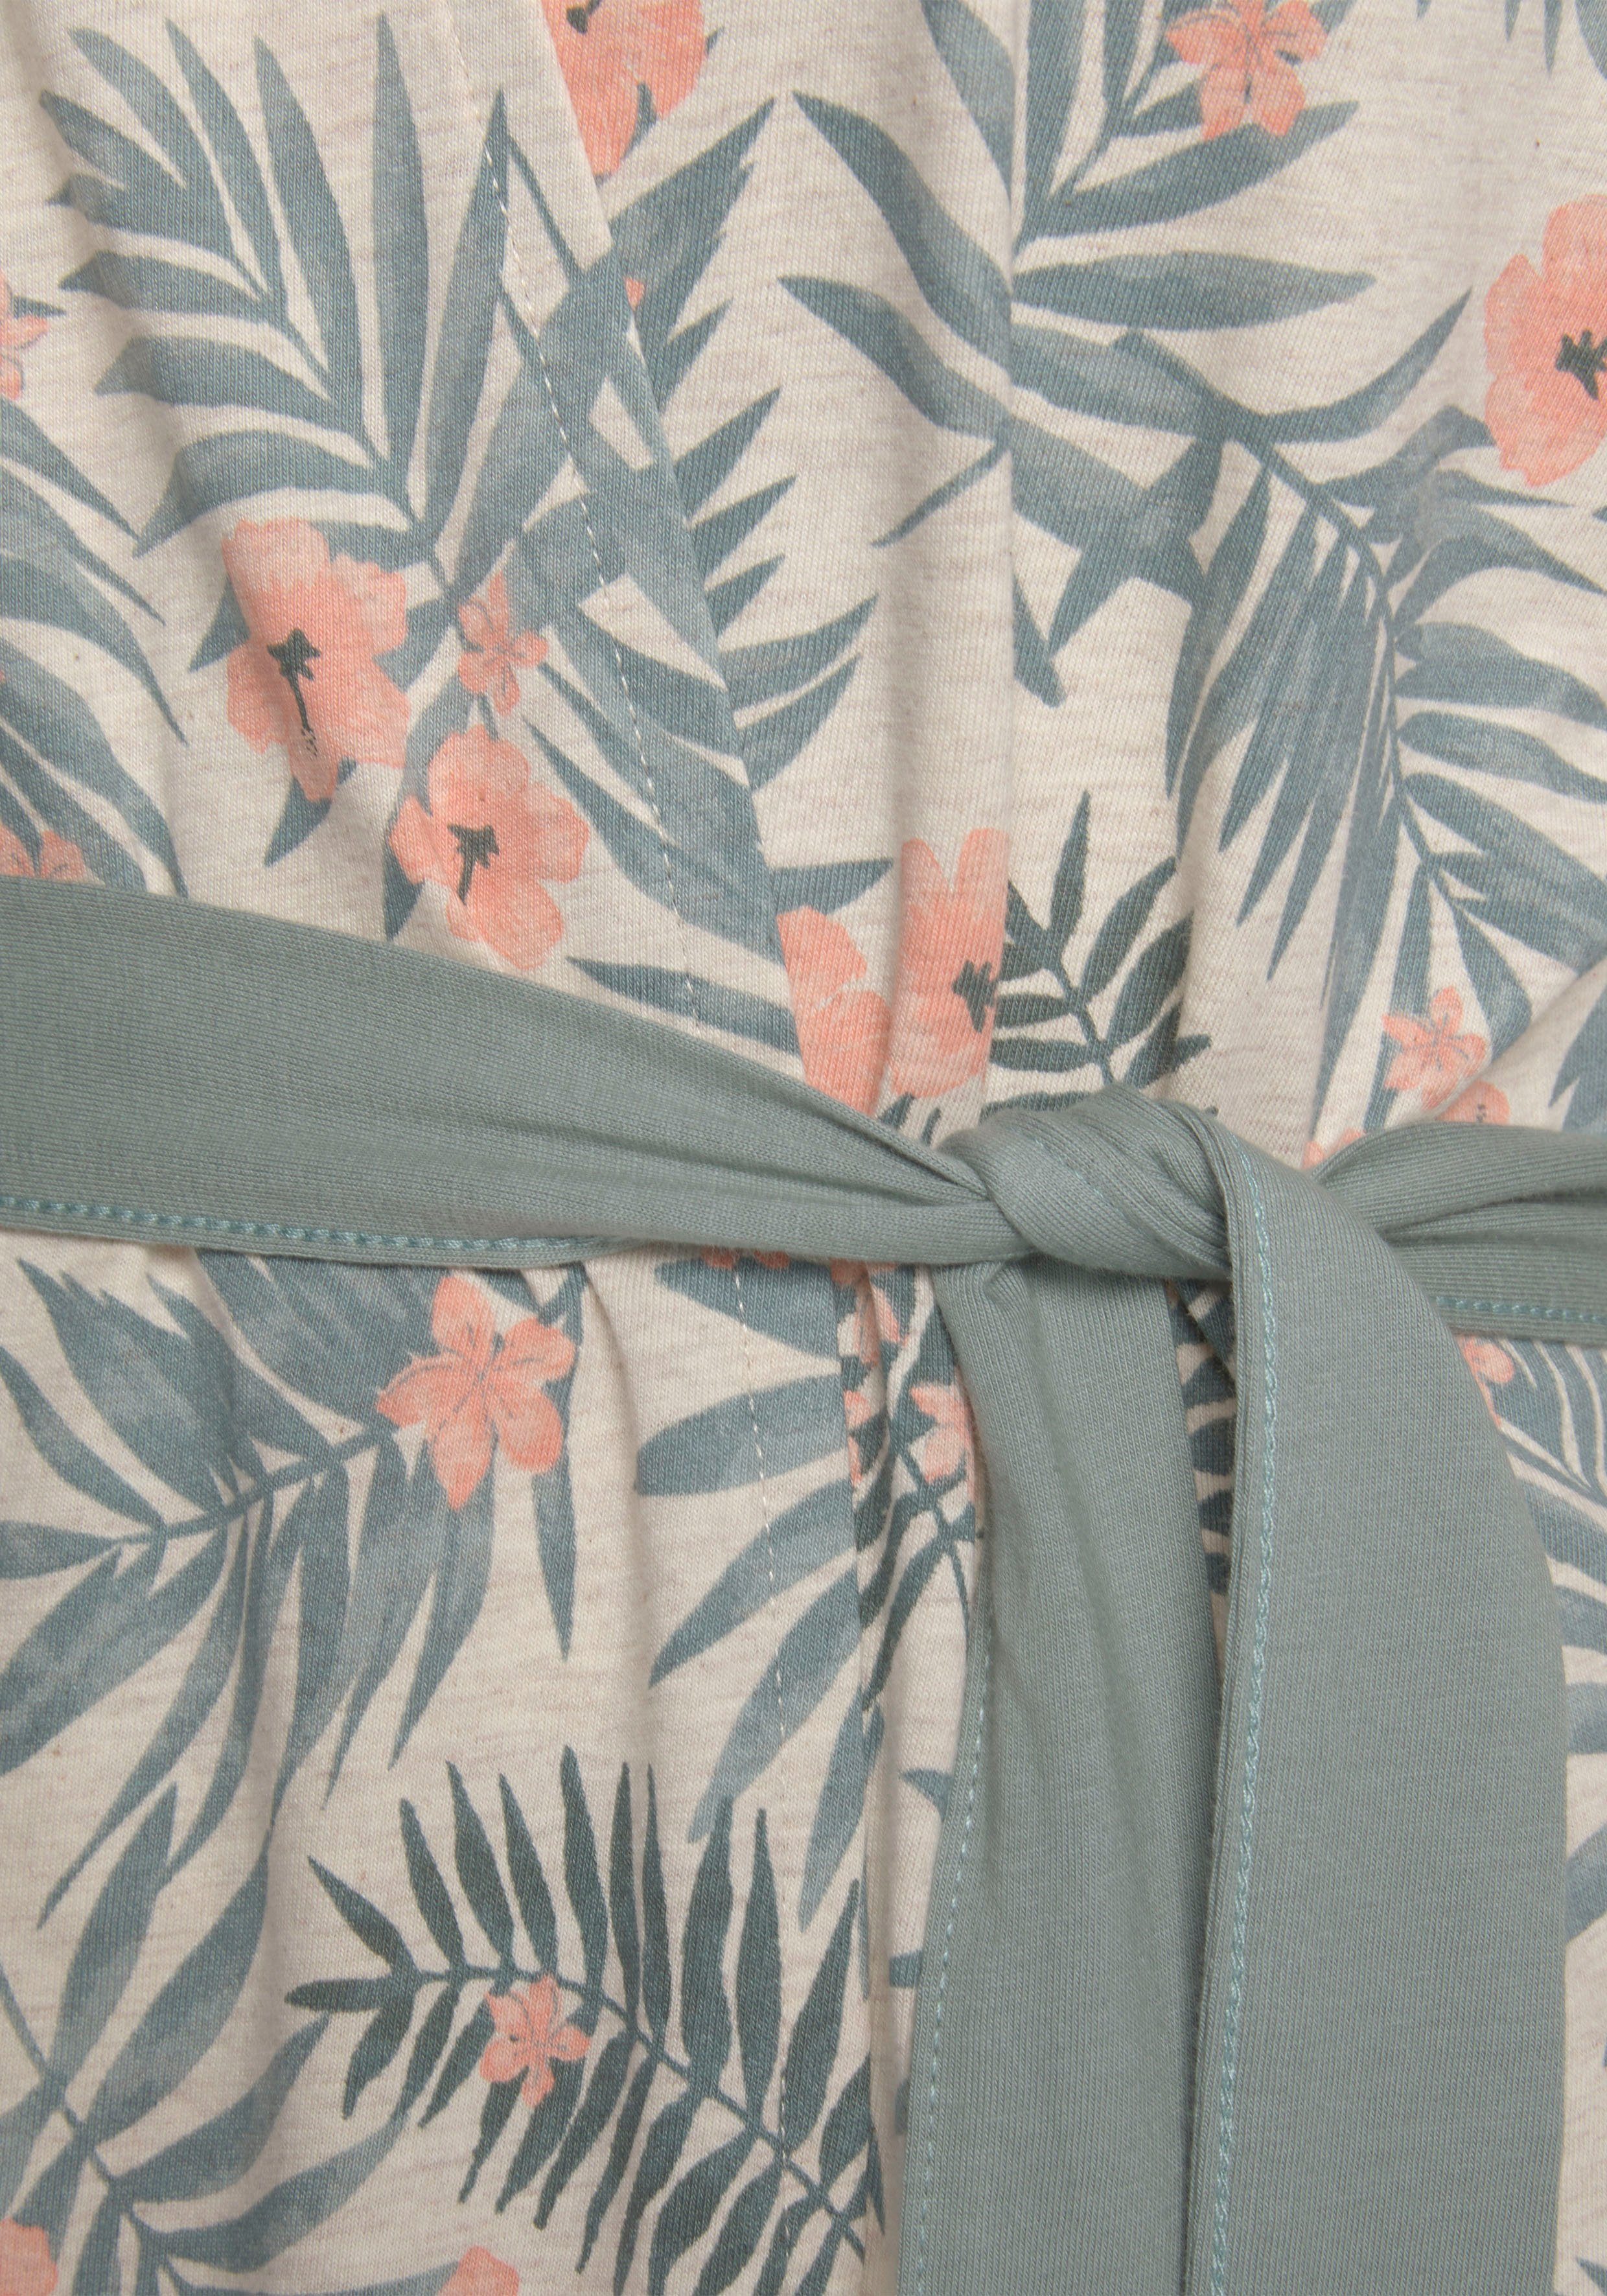 LASCANA Kimono, Kurzform, sand-grün in uni Allover-Druck und Gürtel, Baumwolle